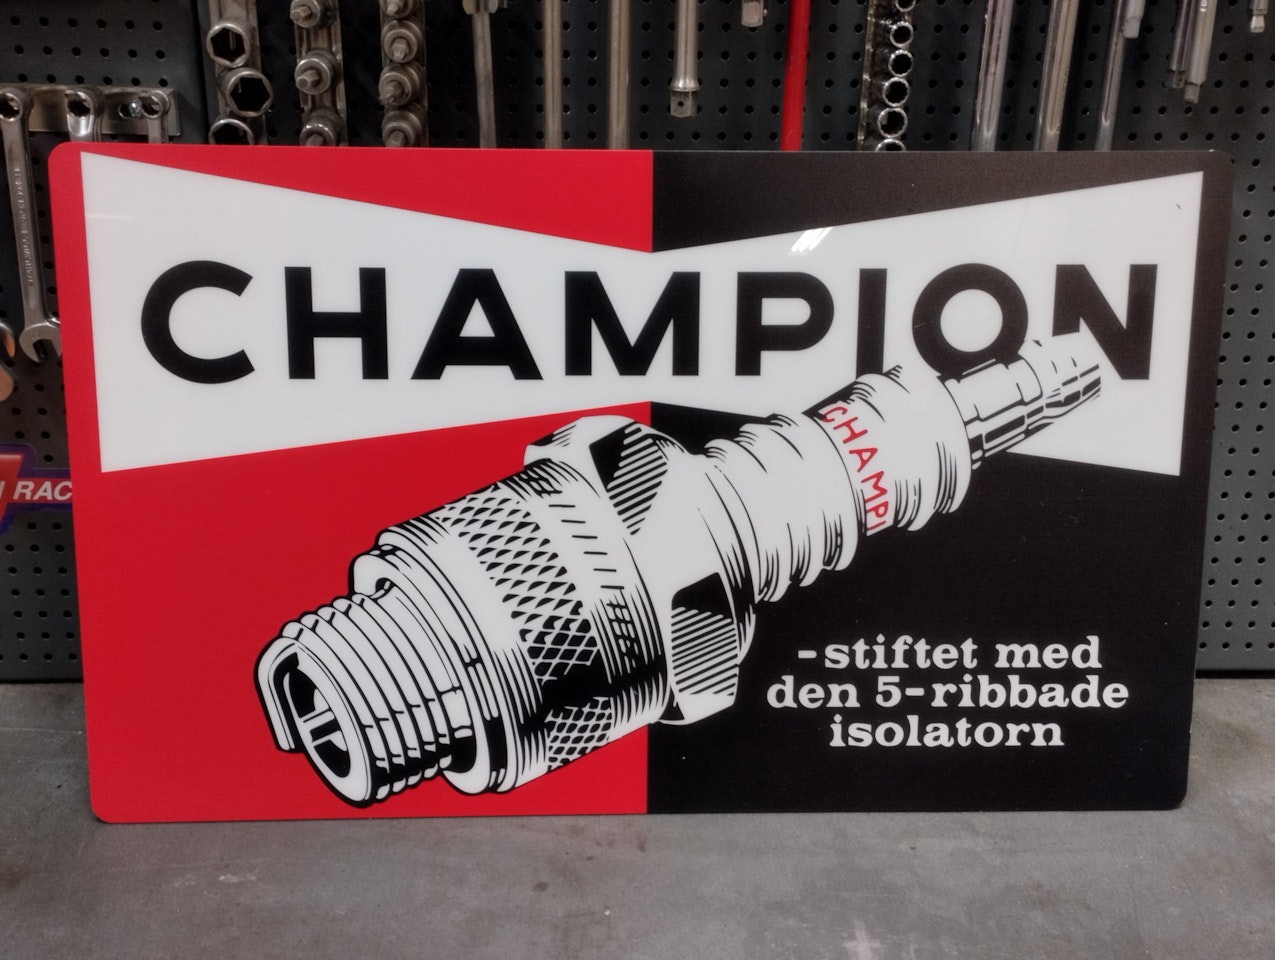 Svensk retroskylt i originalmått     Mått:   30cm hög  50cm bred      Material: akrylplast 3mm